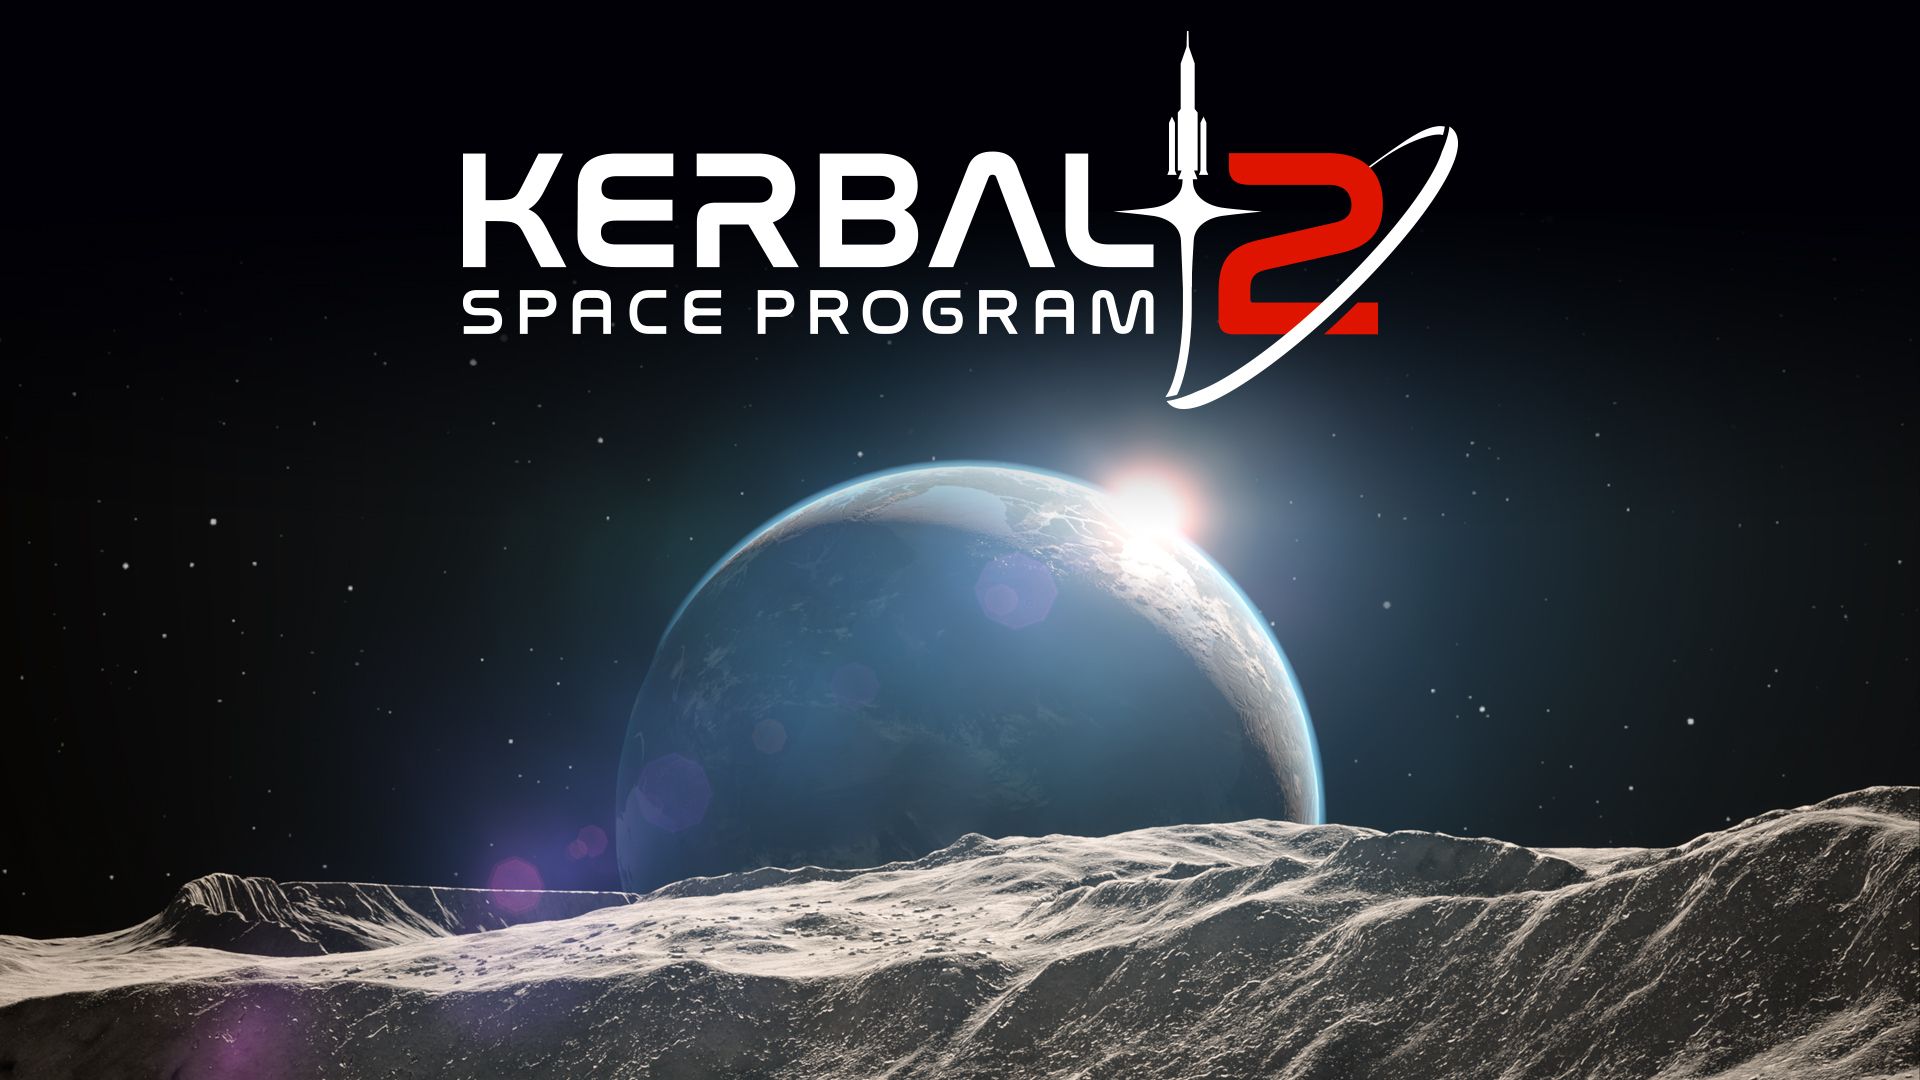 Kerbal Space Program 2 auf 2023 verschoben